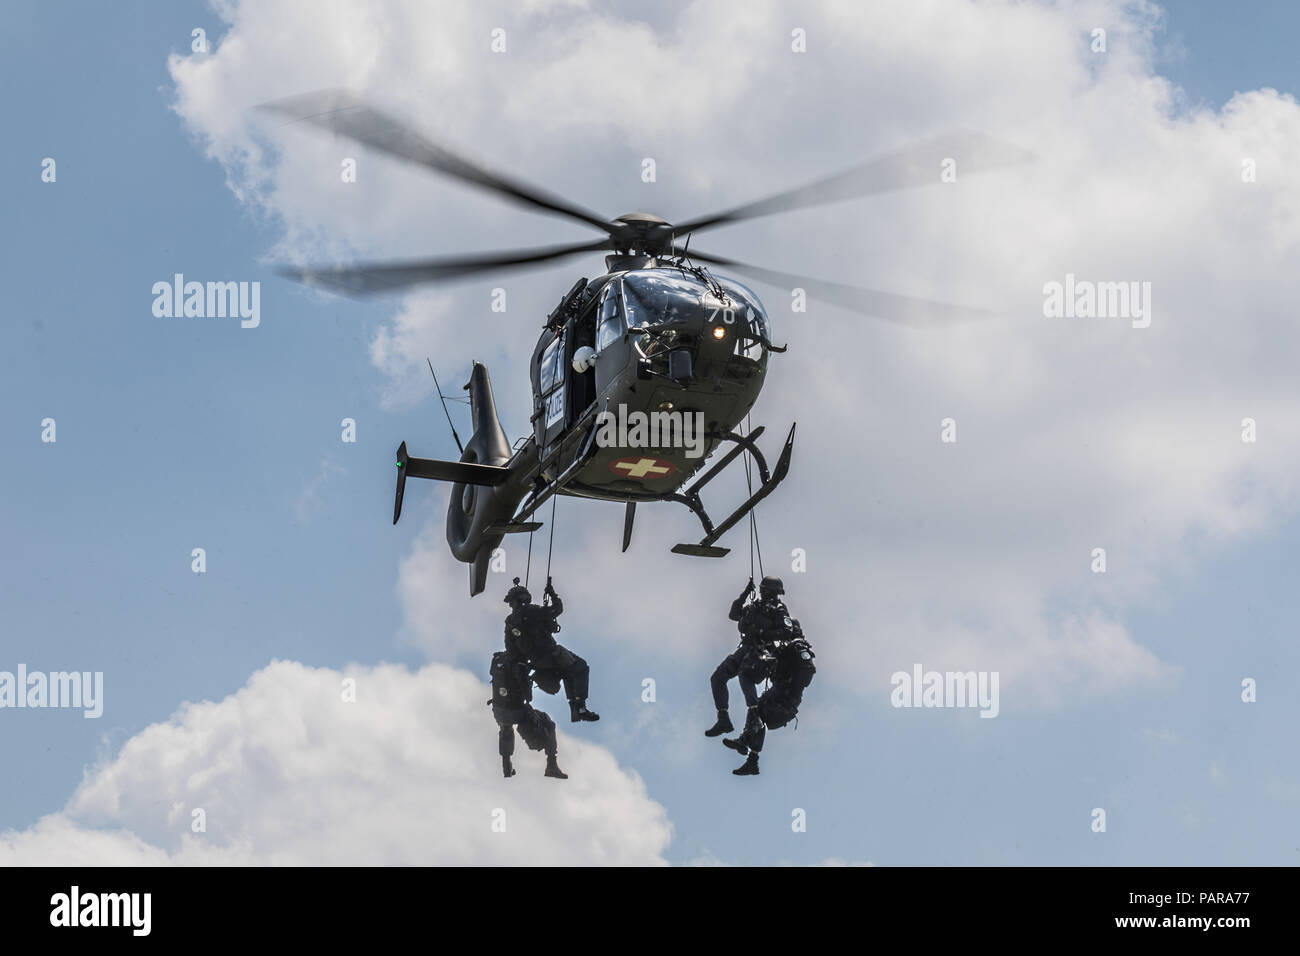 Spezialeinheit der Polizei, die in der Übung mit Hubschrauber, Rescue Team  Seile aus, Luzern, Schweiz Stockfotografie - Alamy